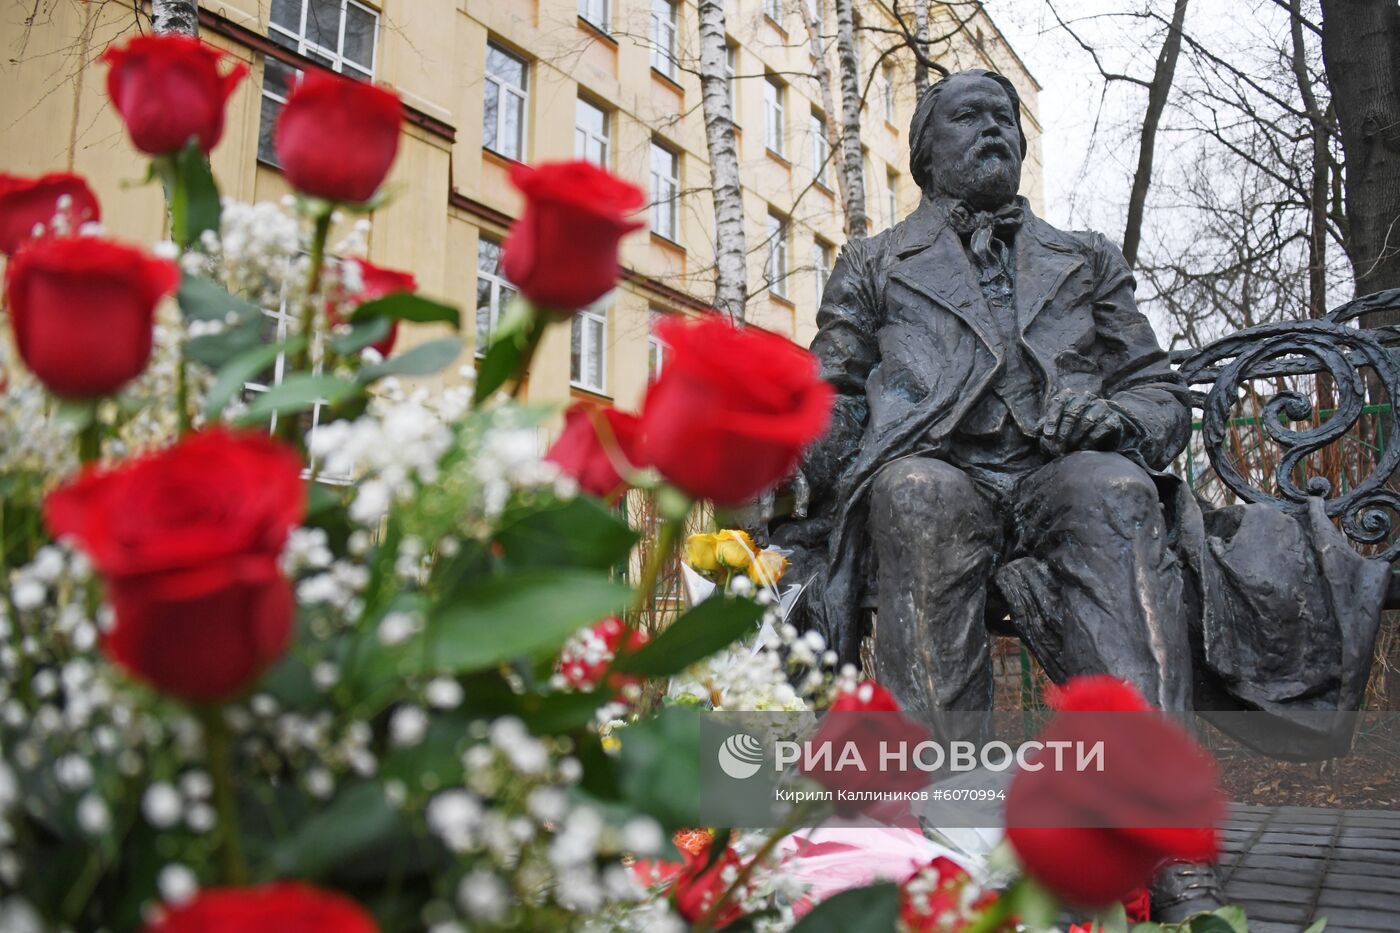 Открытие памятника М. М. Ипполитову-Иванову в Москве 